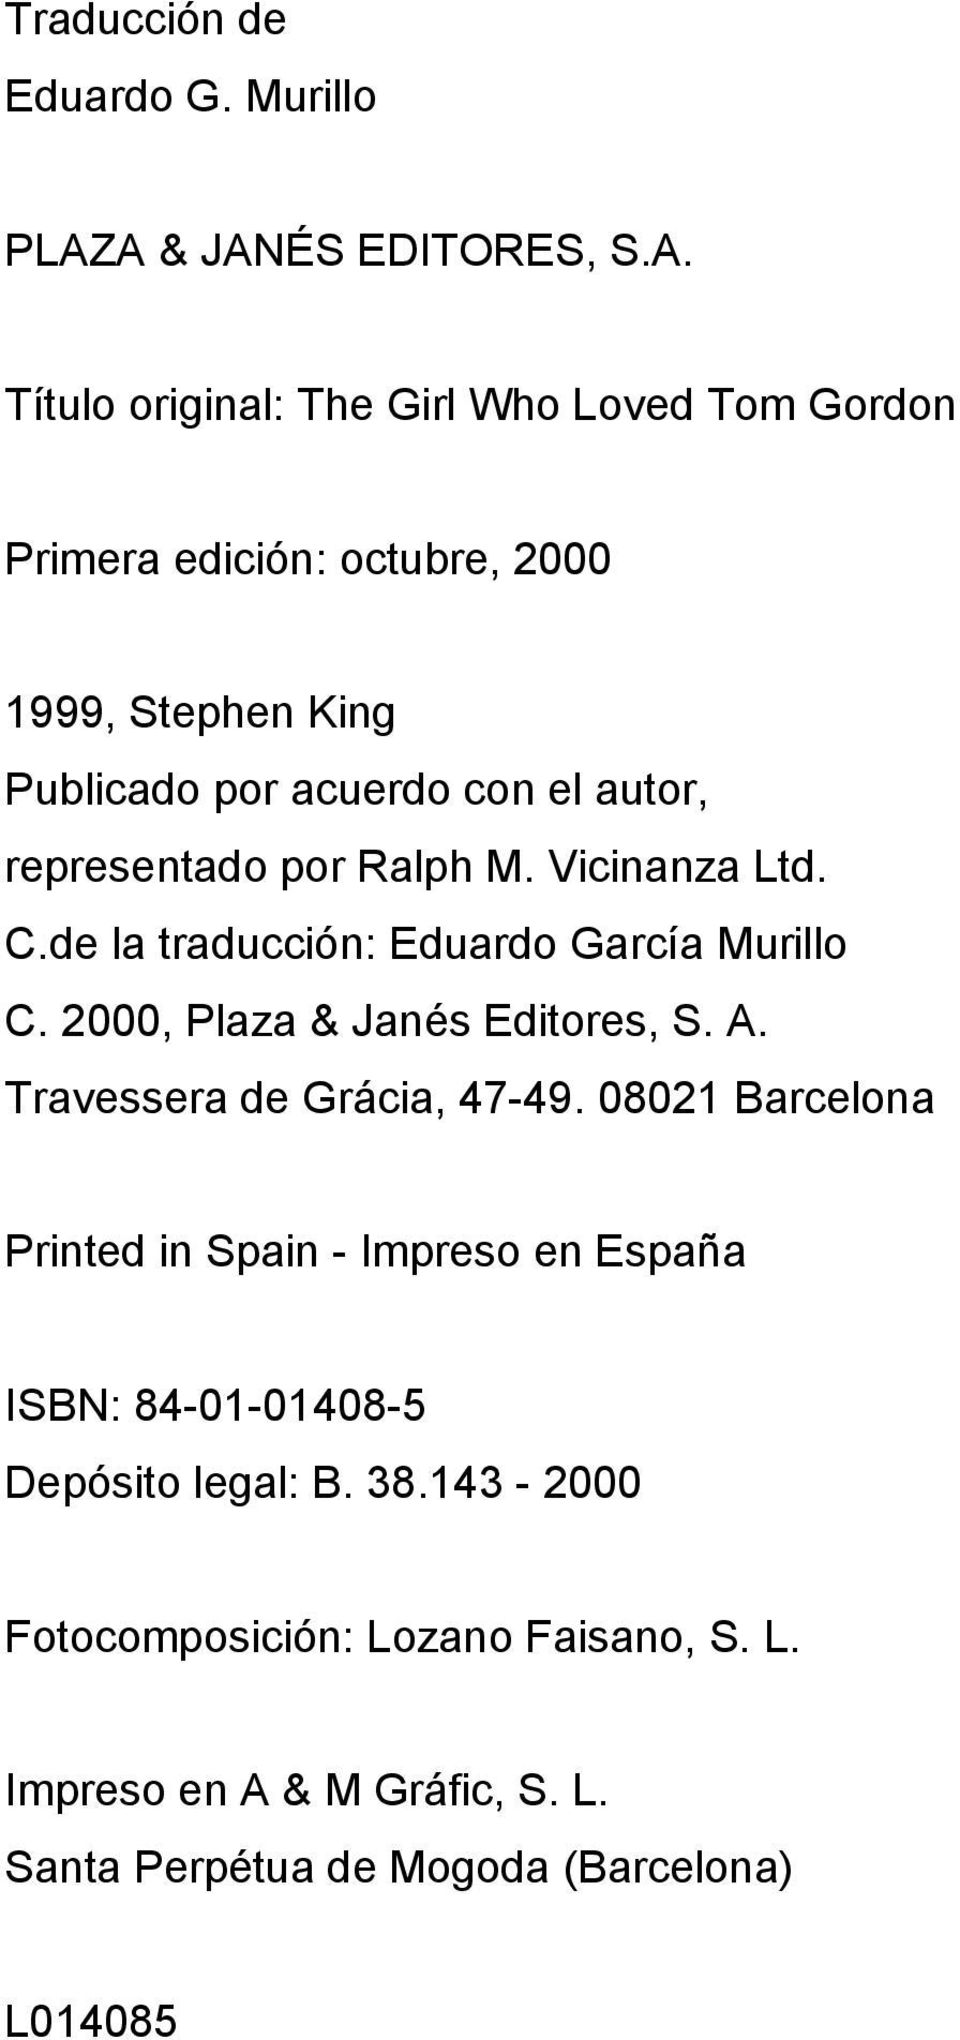 acuerdo con el autor, representado por Ralph M. Vicinanza Ltd. C.de la traducción: Eduardo García Murillo C. 2000, Plaza & Janés Editores, S.